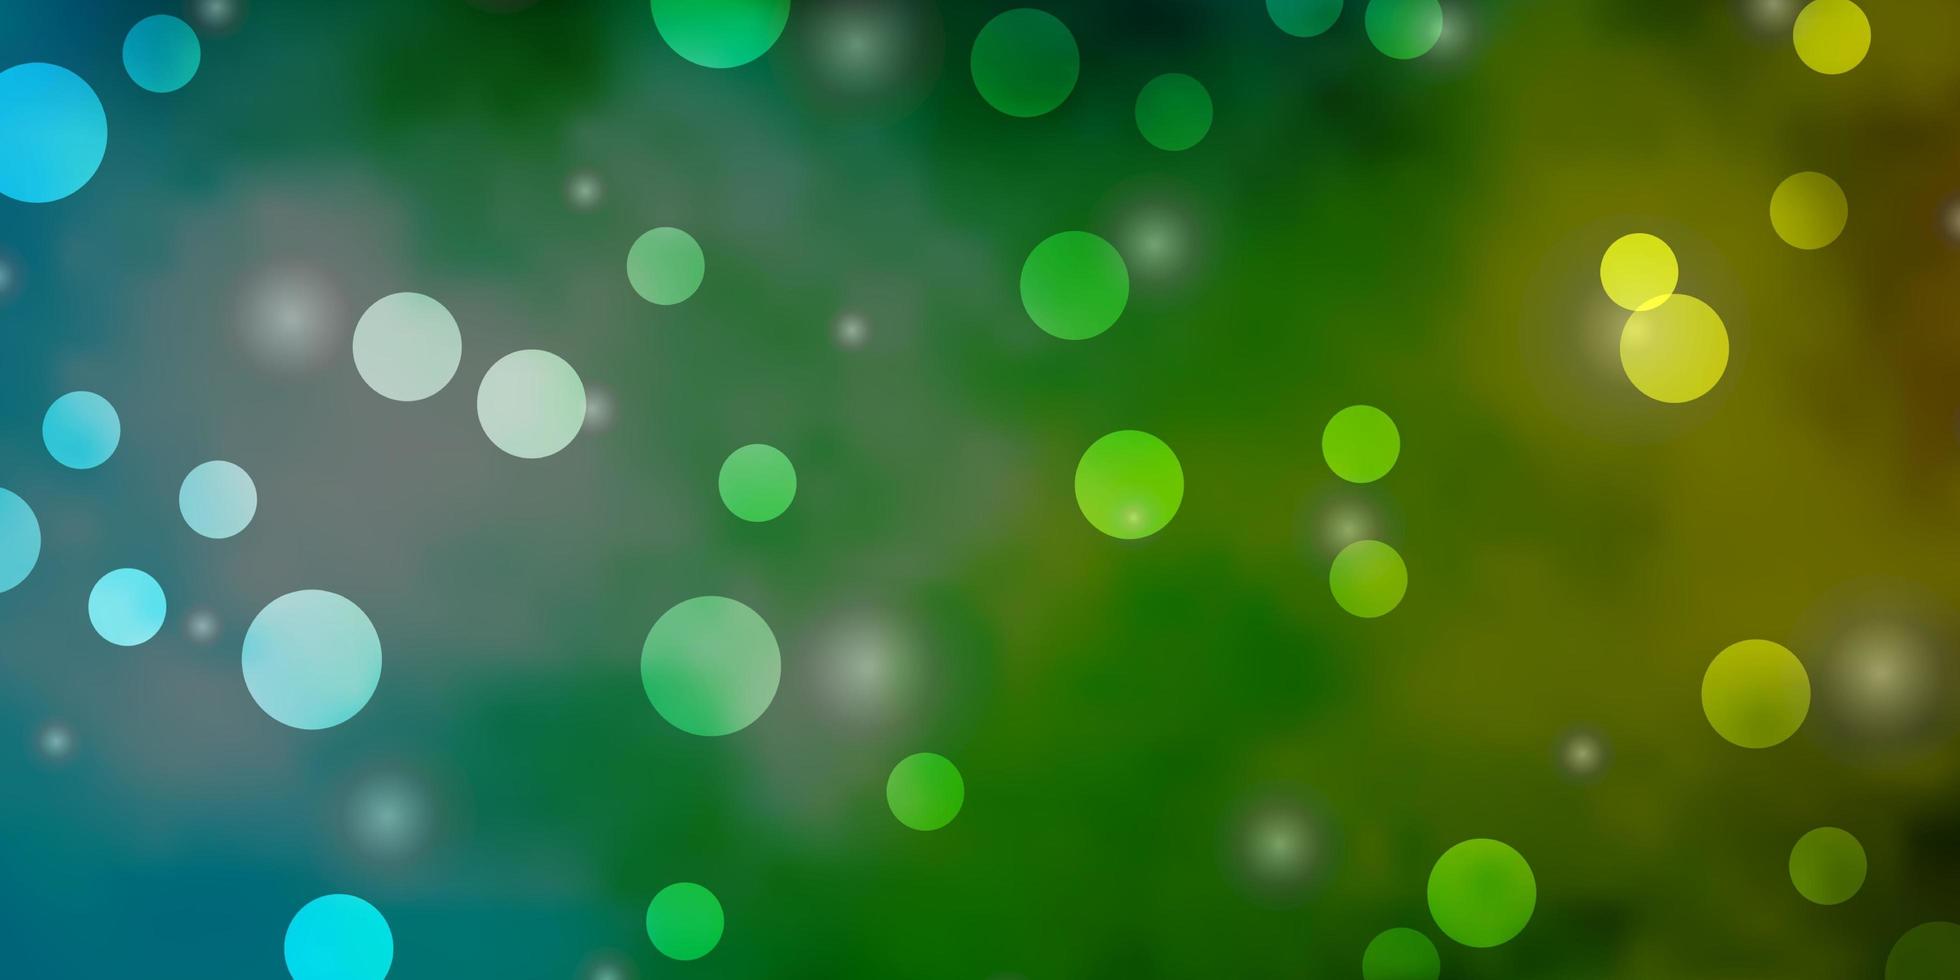 fond de vecteur vert bleu clair avec des cercles étoiles design abstrait dans un style dégradé avec des bulles étoiles nouveau modèle pour un livre de marque